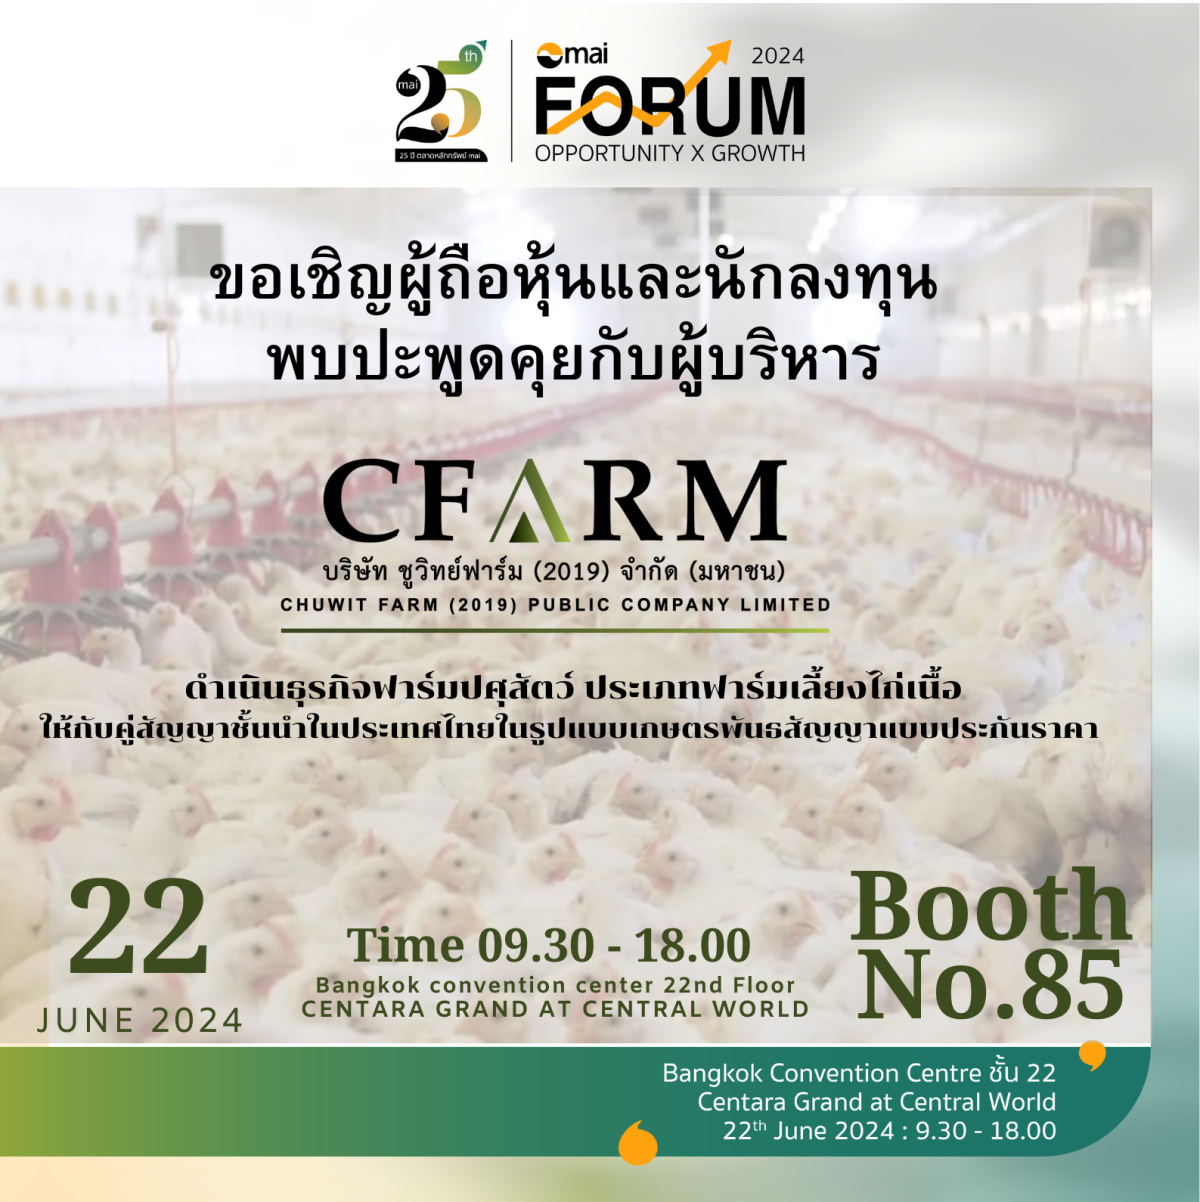 CFARM ชวนนักลงทุนพบปะผู้บริหารในงาน mai Forum 2024 บูธเลขที่ 85